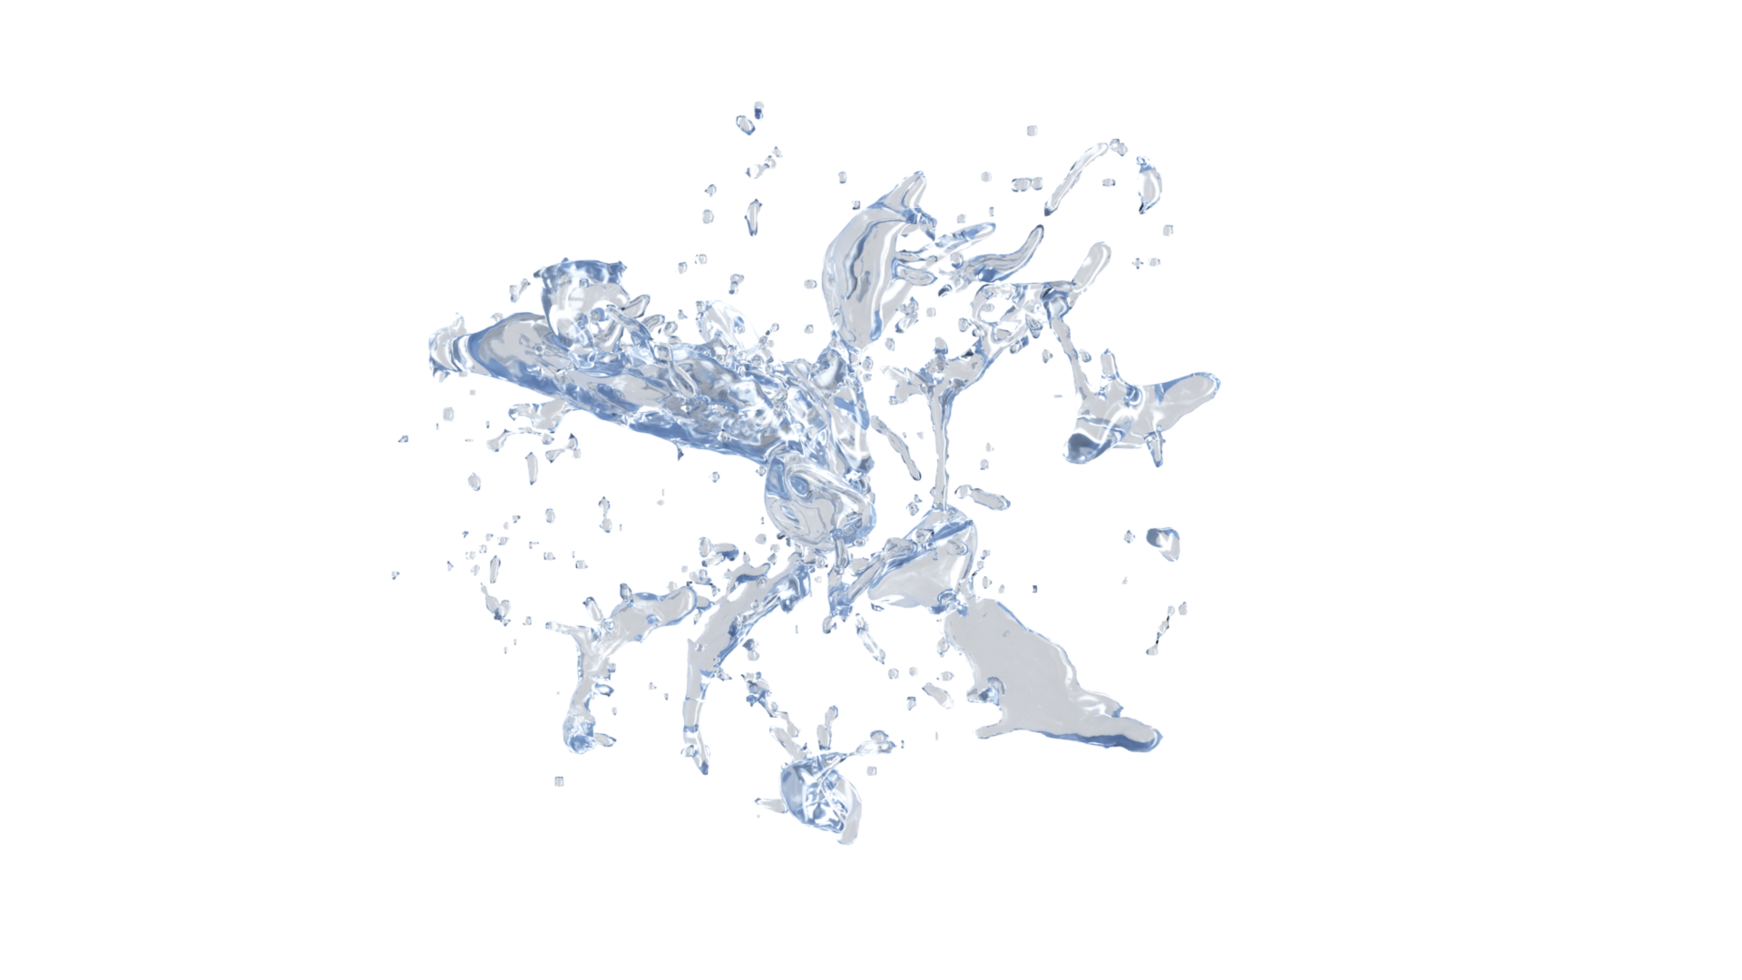 Water Splash with droplets on black background. 3d illustration. png